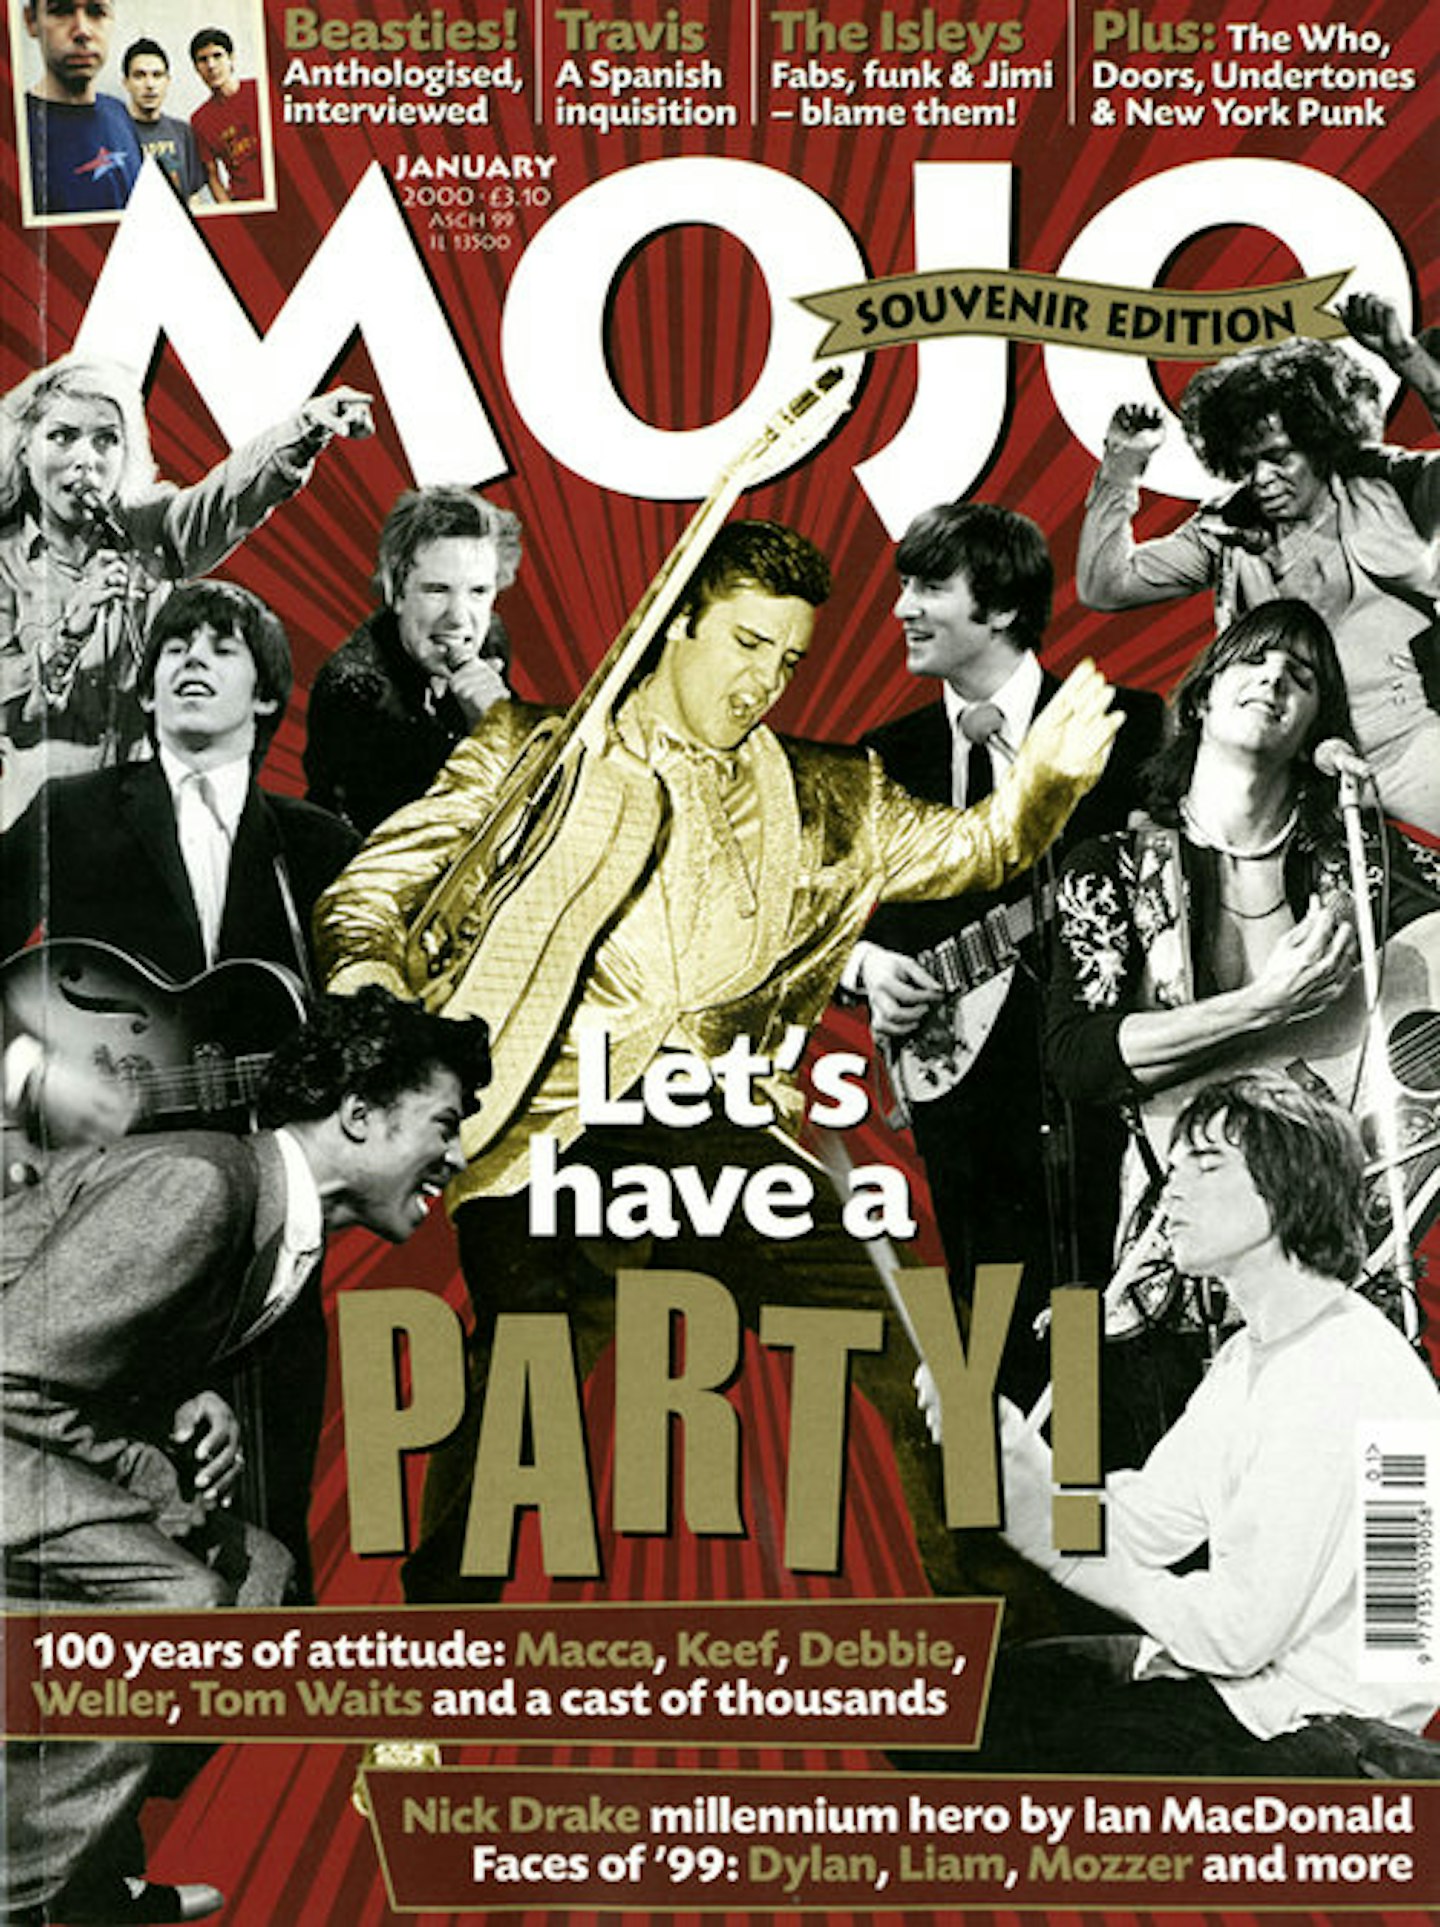 MOJO Issue 74 / January 2000